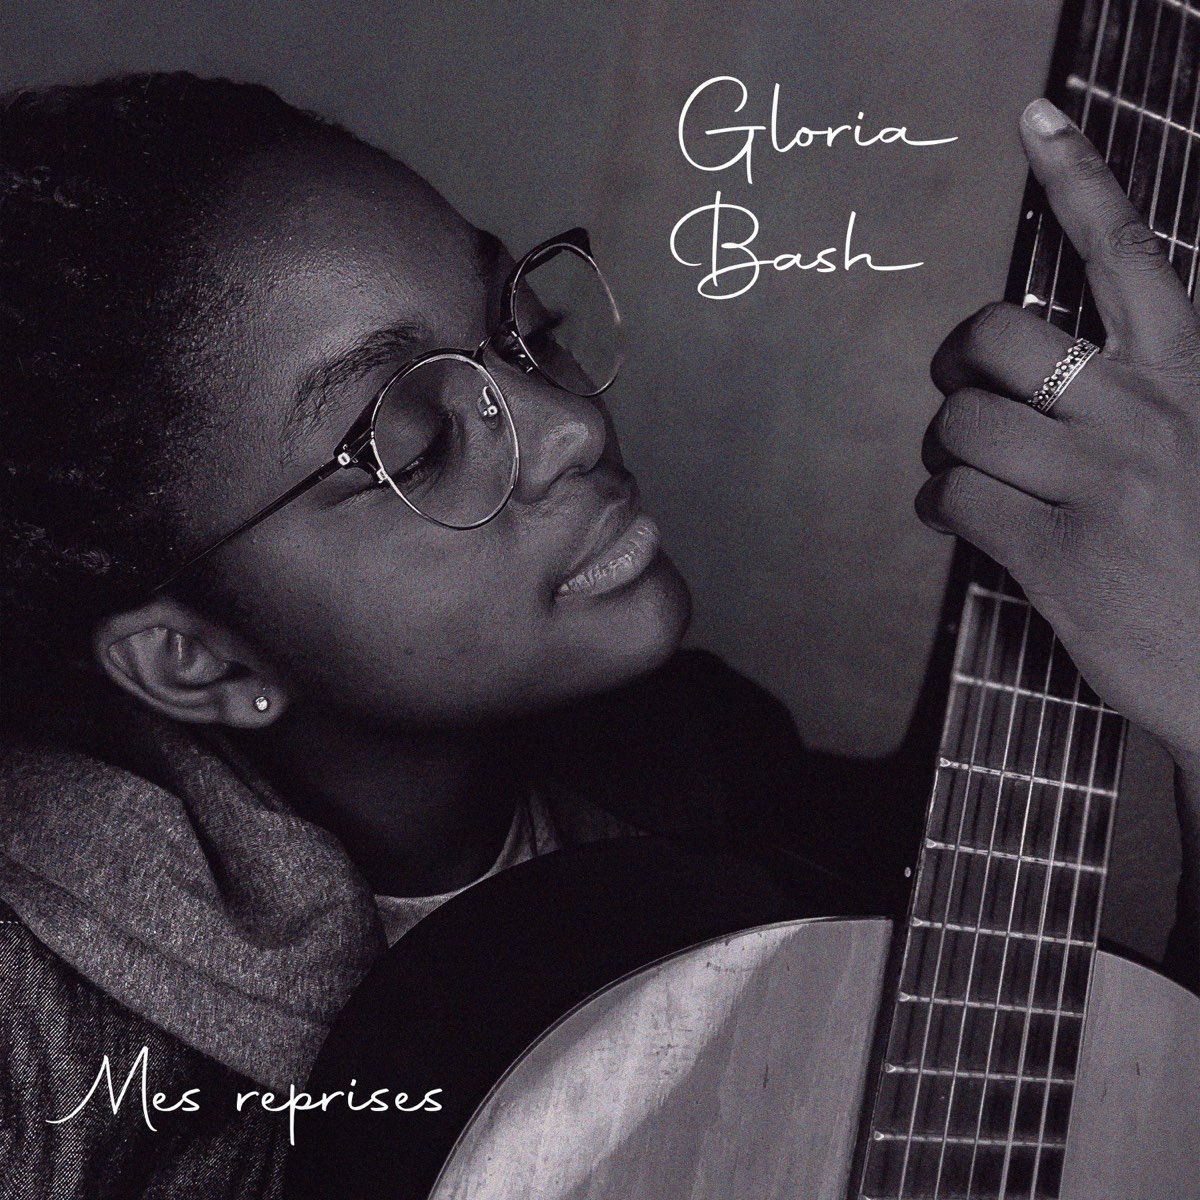 Mes Reprises - Album by Gloria Bash - Apple Music